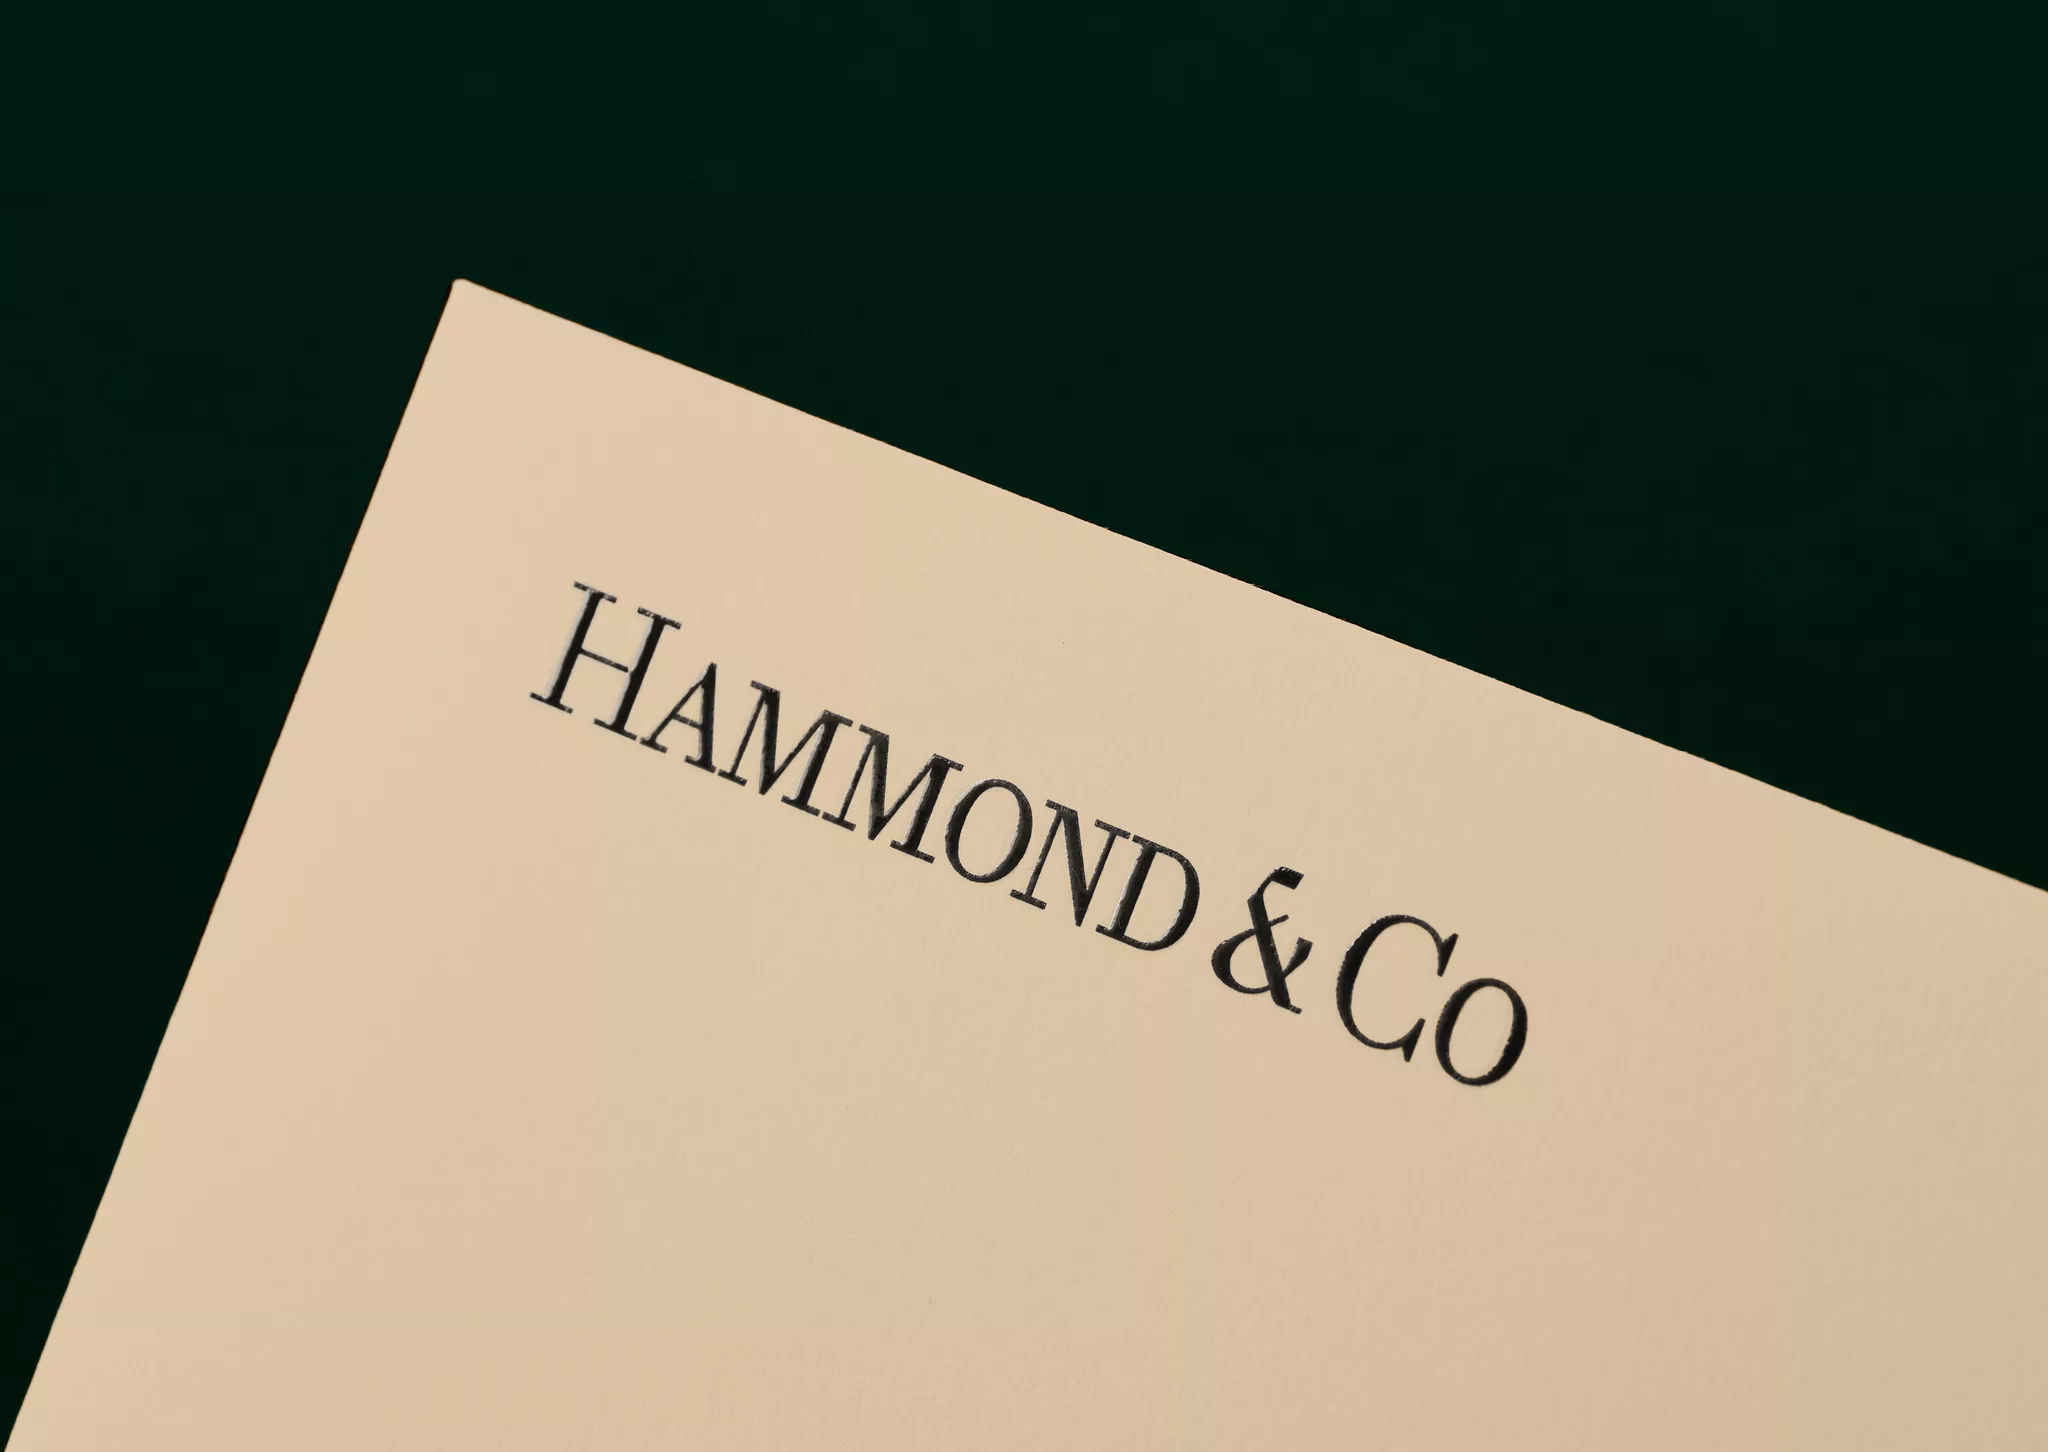 Hammond&Co